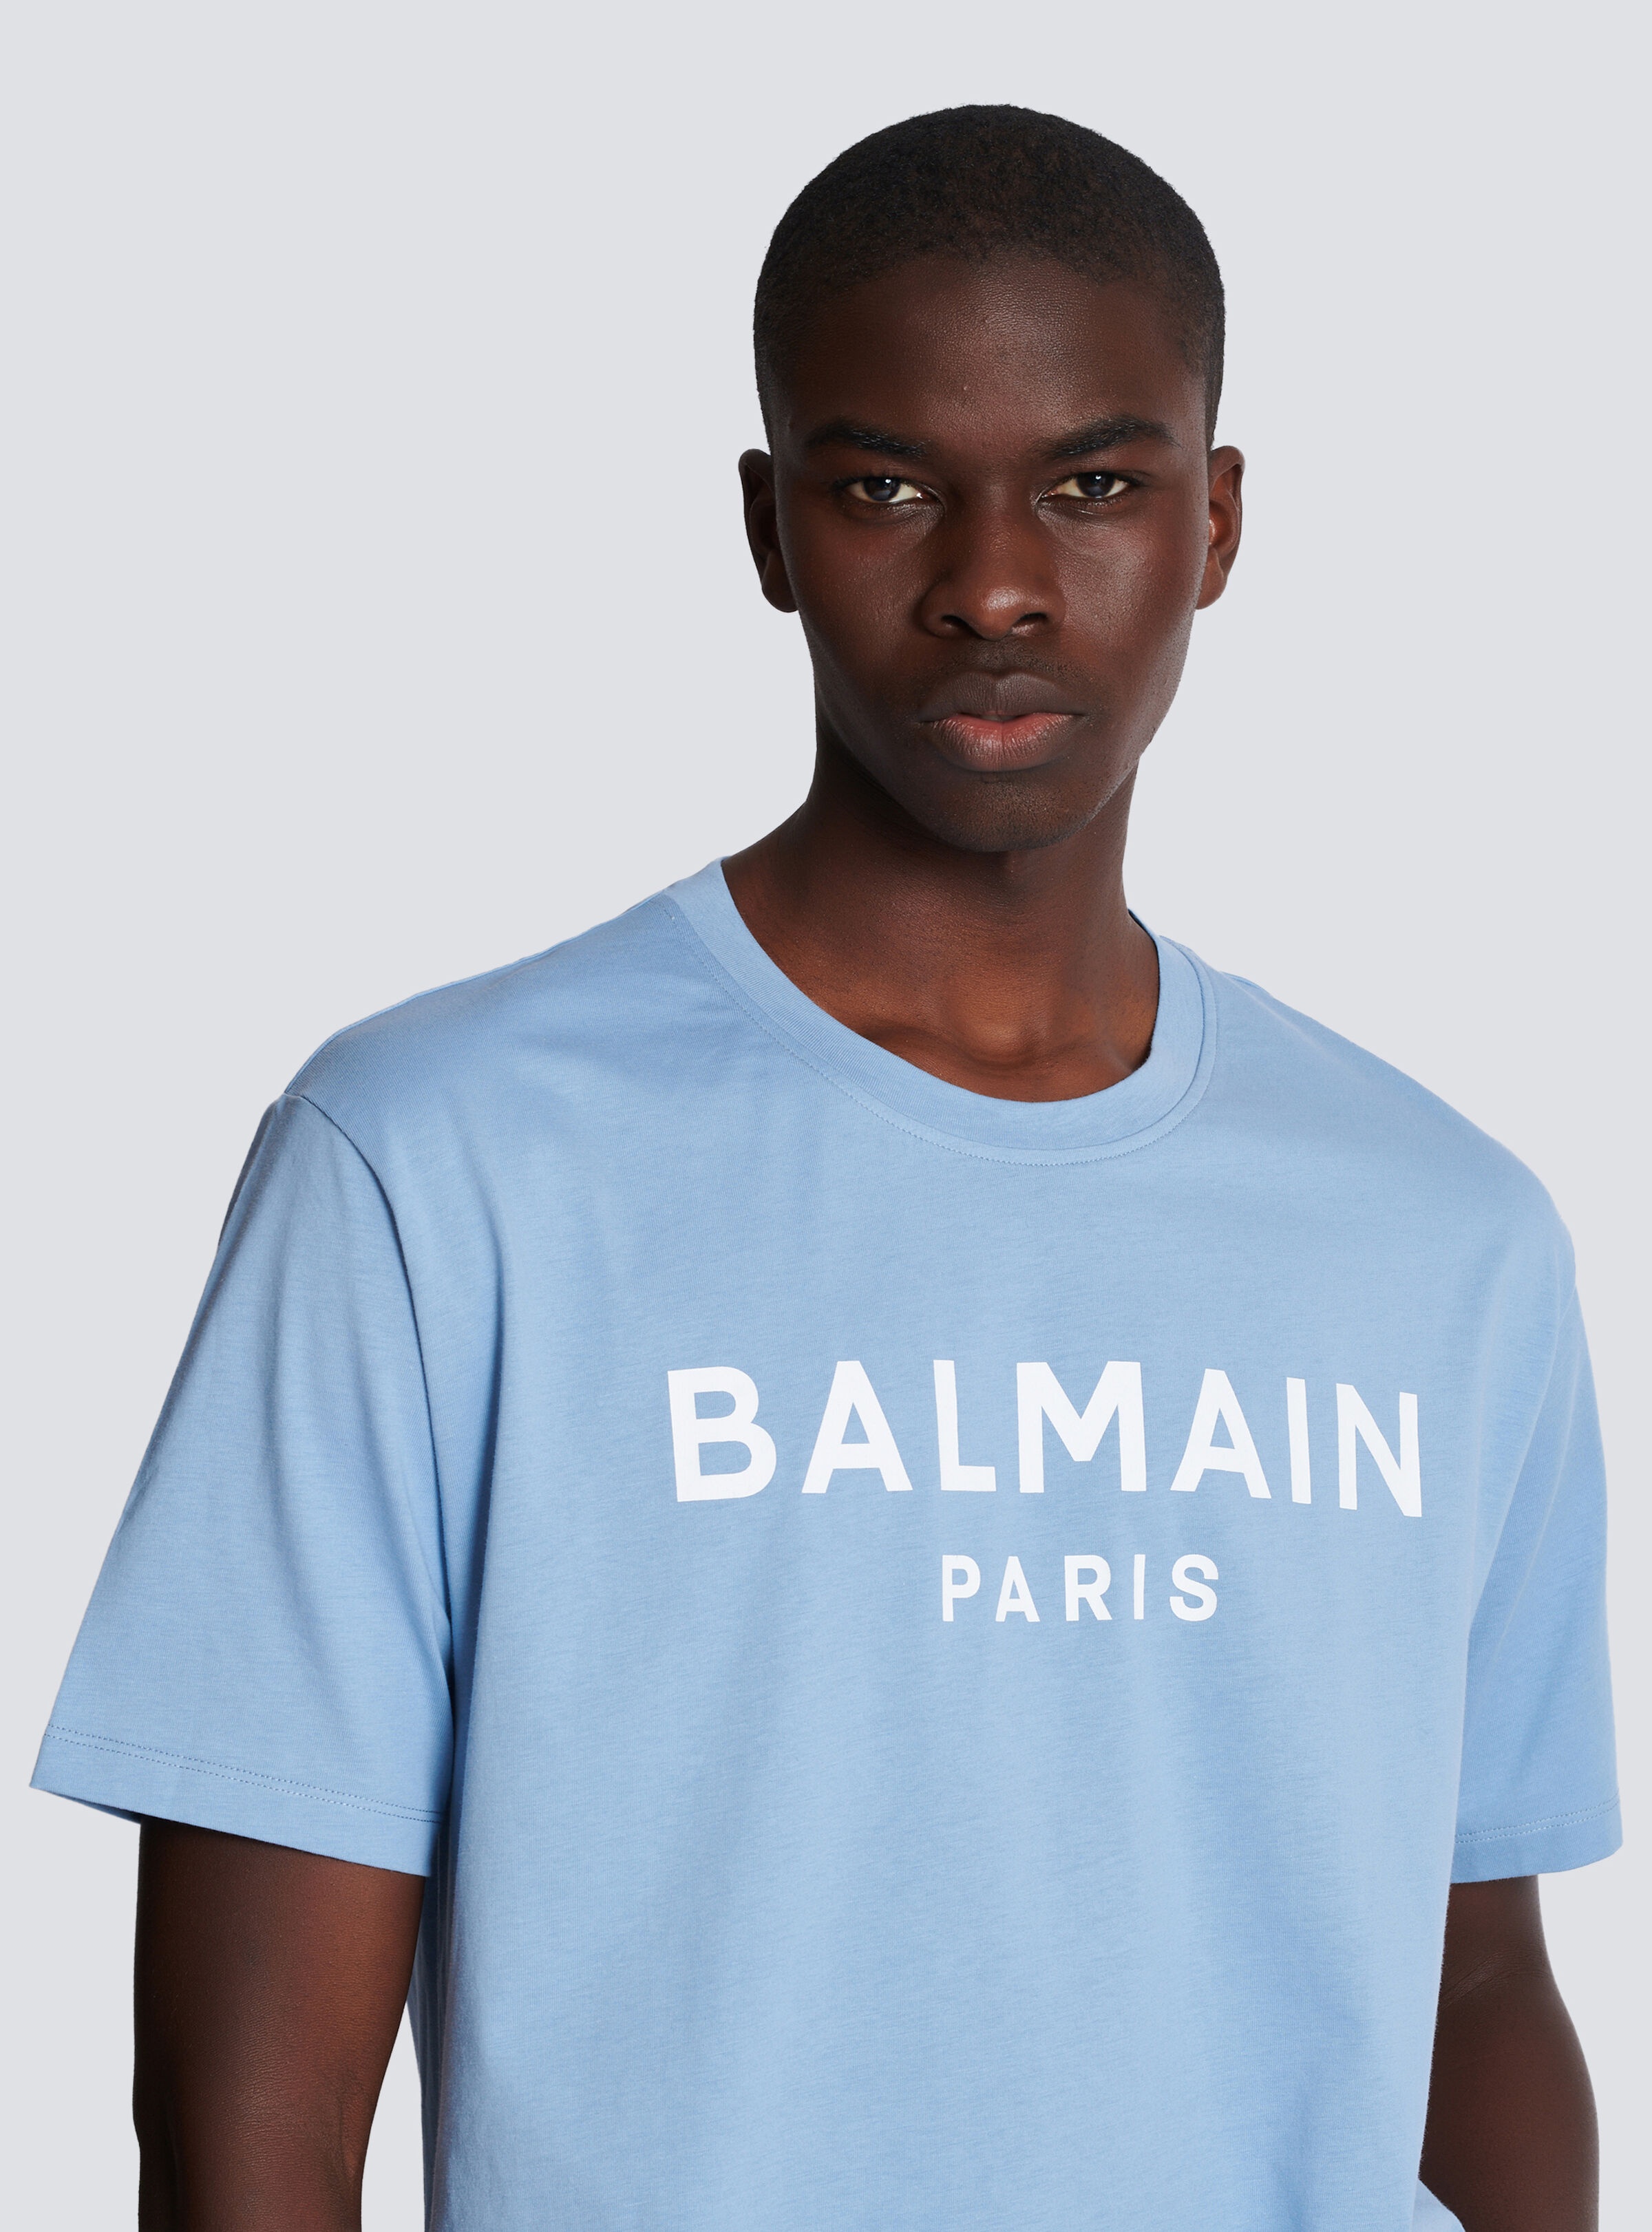 Balmain Paris T-shirt - 7